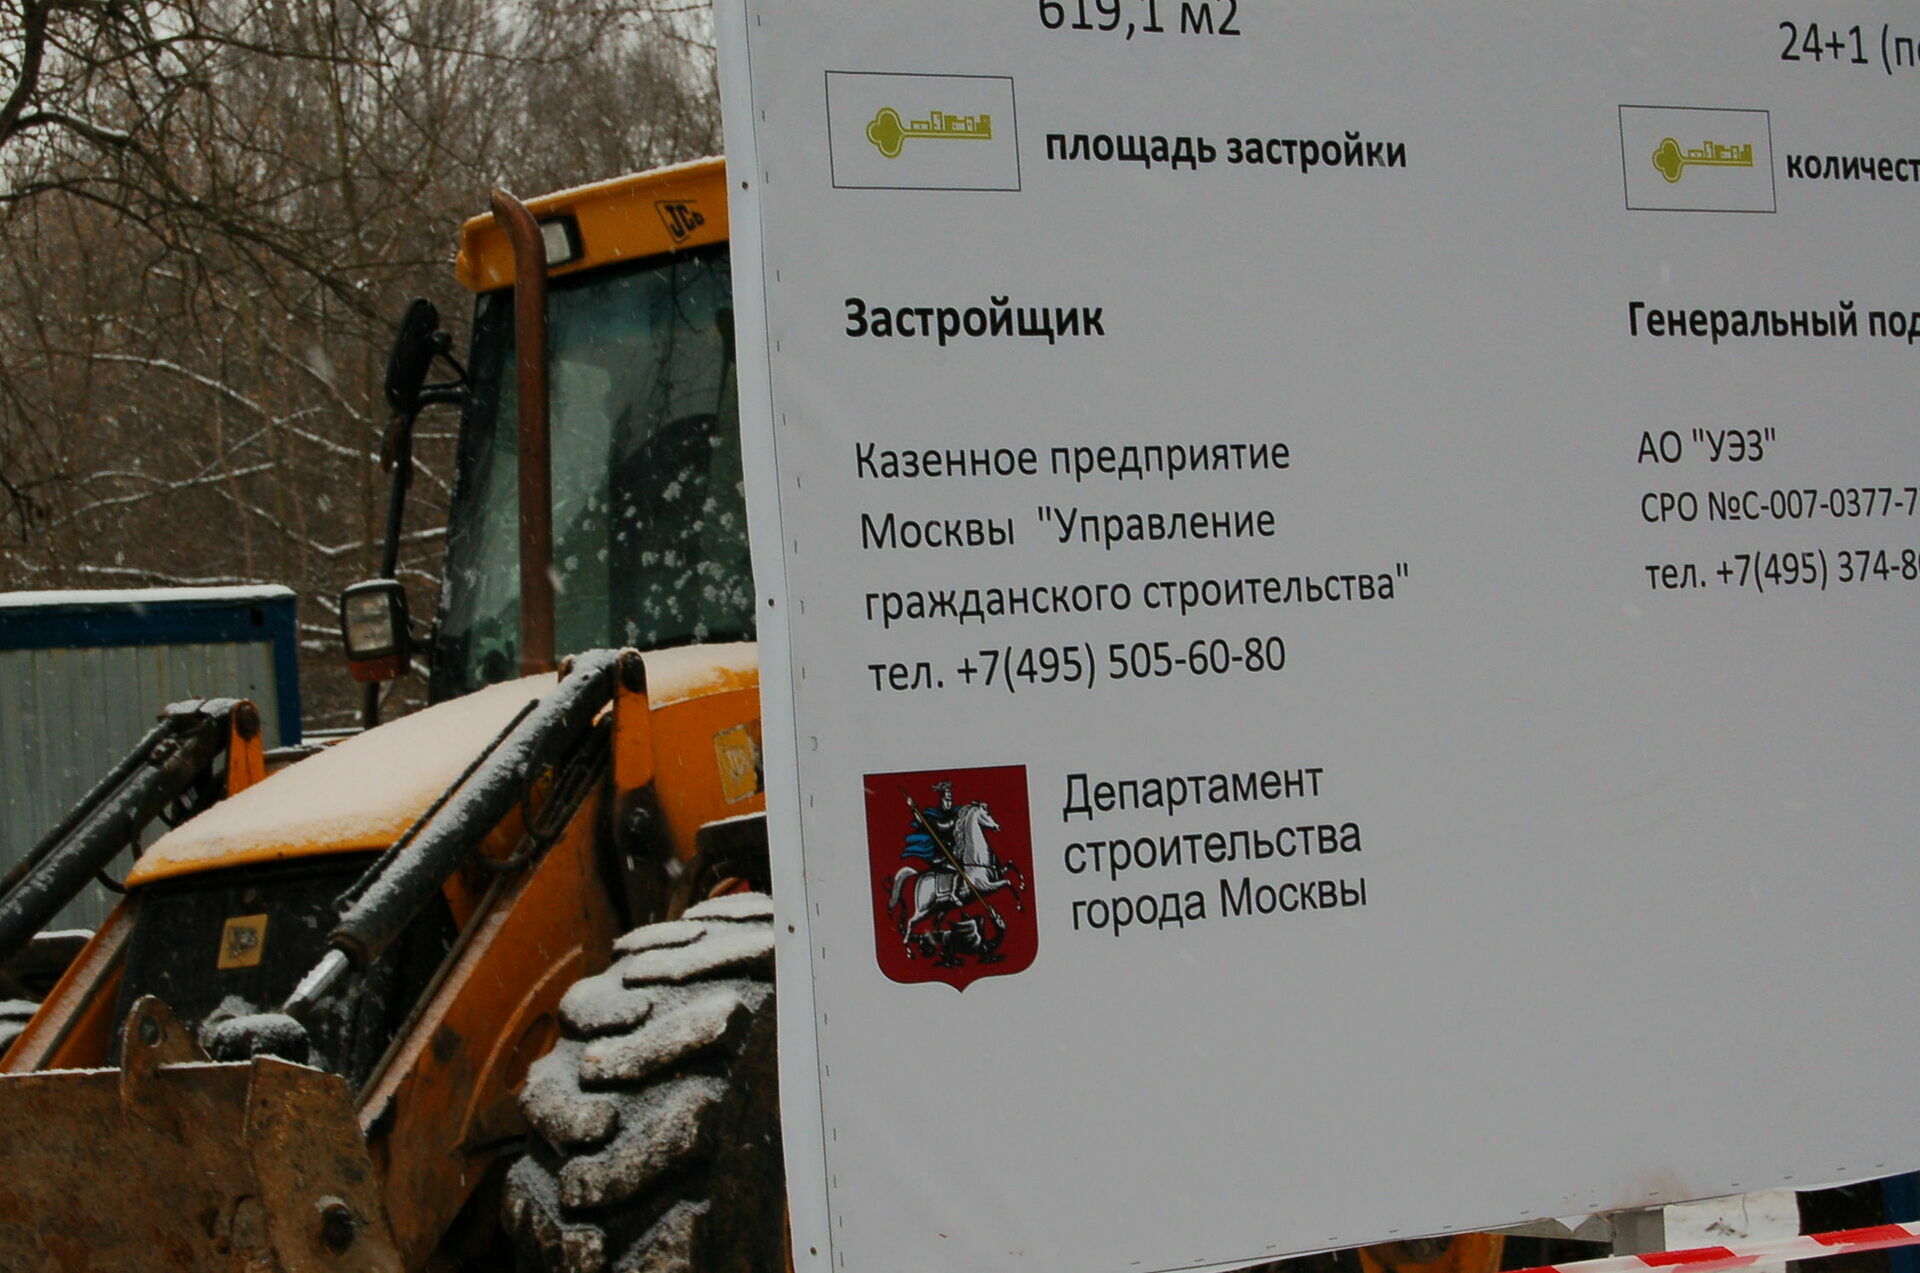 Информационный щит появился гораздо позже строителей. Застройщик - сама мэрия Москвы в лице Департамента строительства 